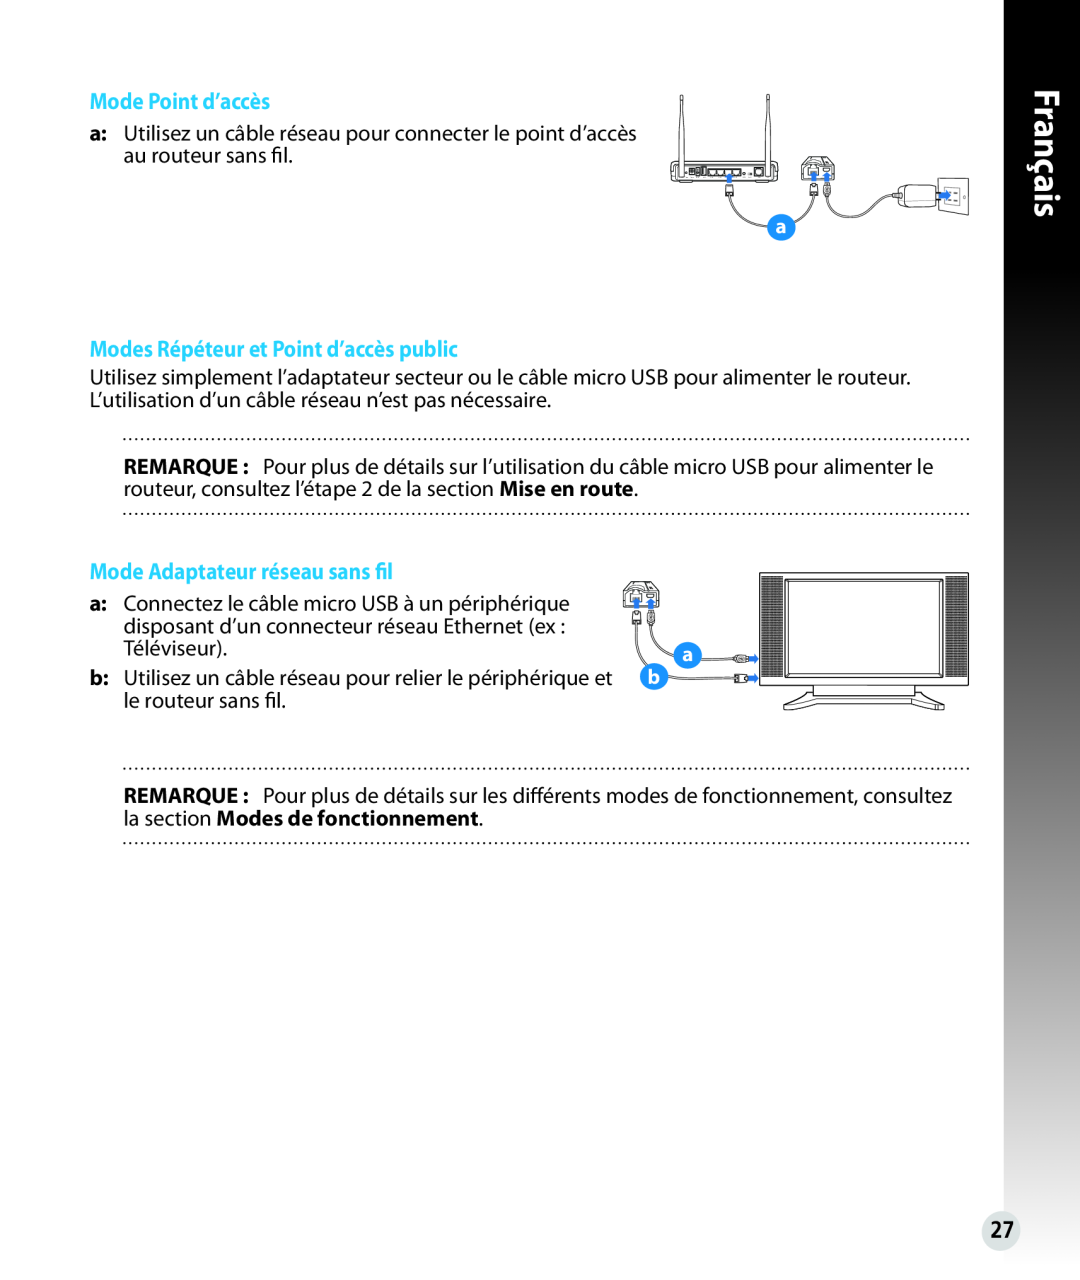 Asus WL330N Mode Point d’accès, Modes Répéteur et Point d’accès public, Mode Adaptateur réseau sans fil, Français 